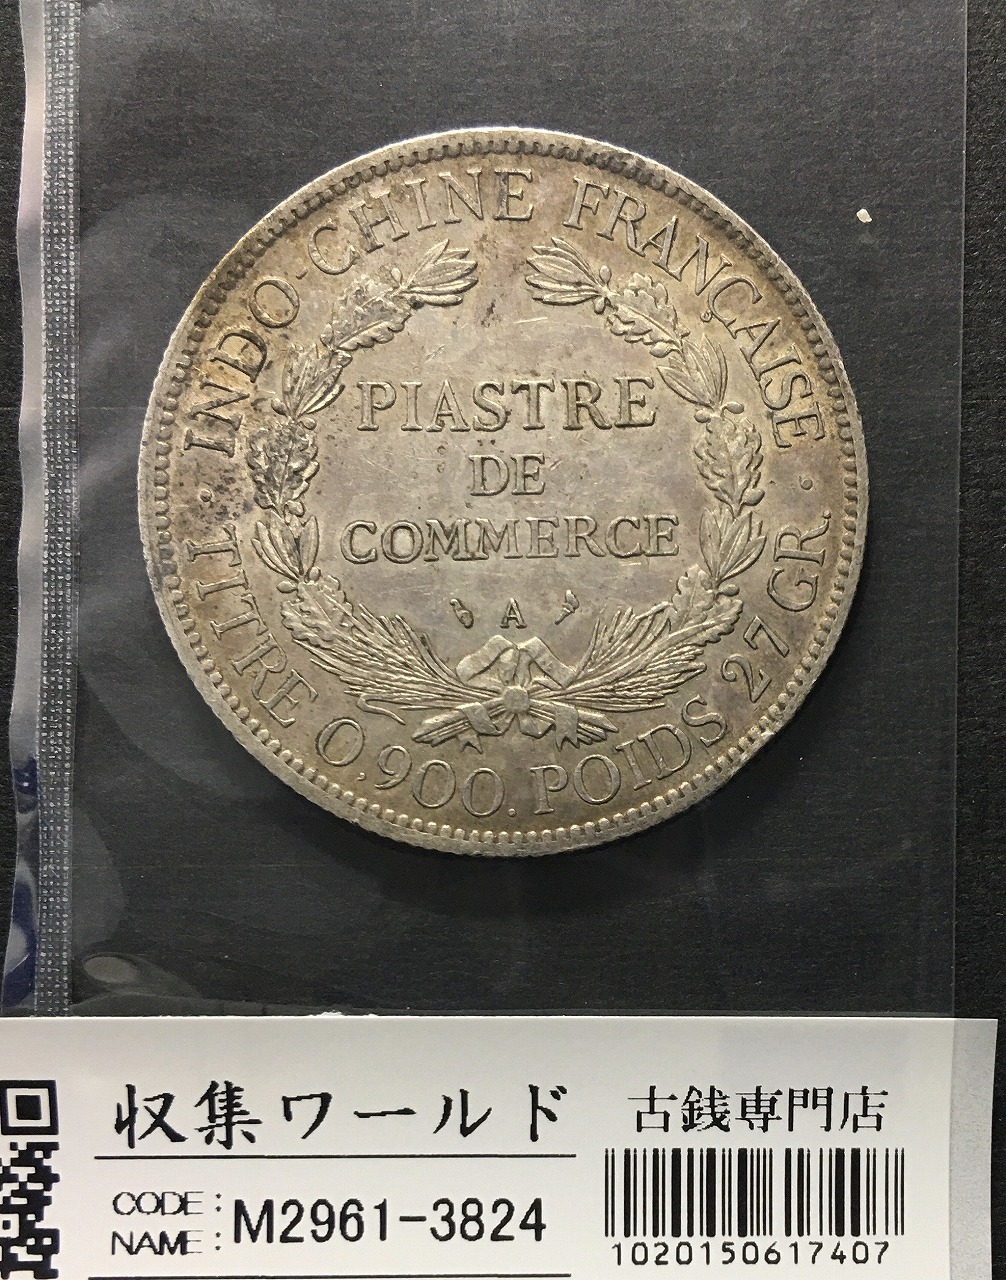 ドミニカ共和国 1955年 30ペソ金貨 準未使用 | 収集ワールド